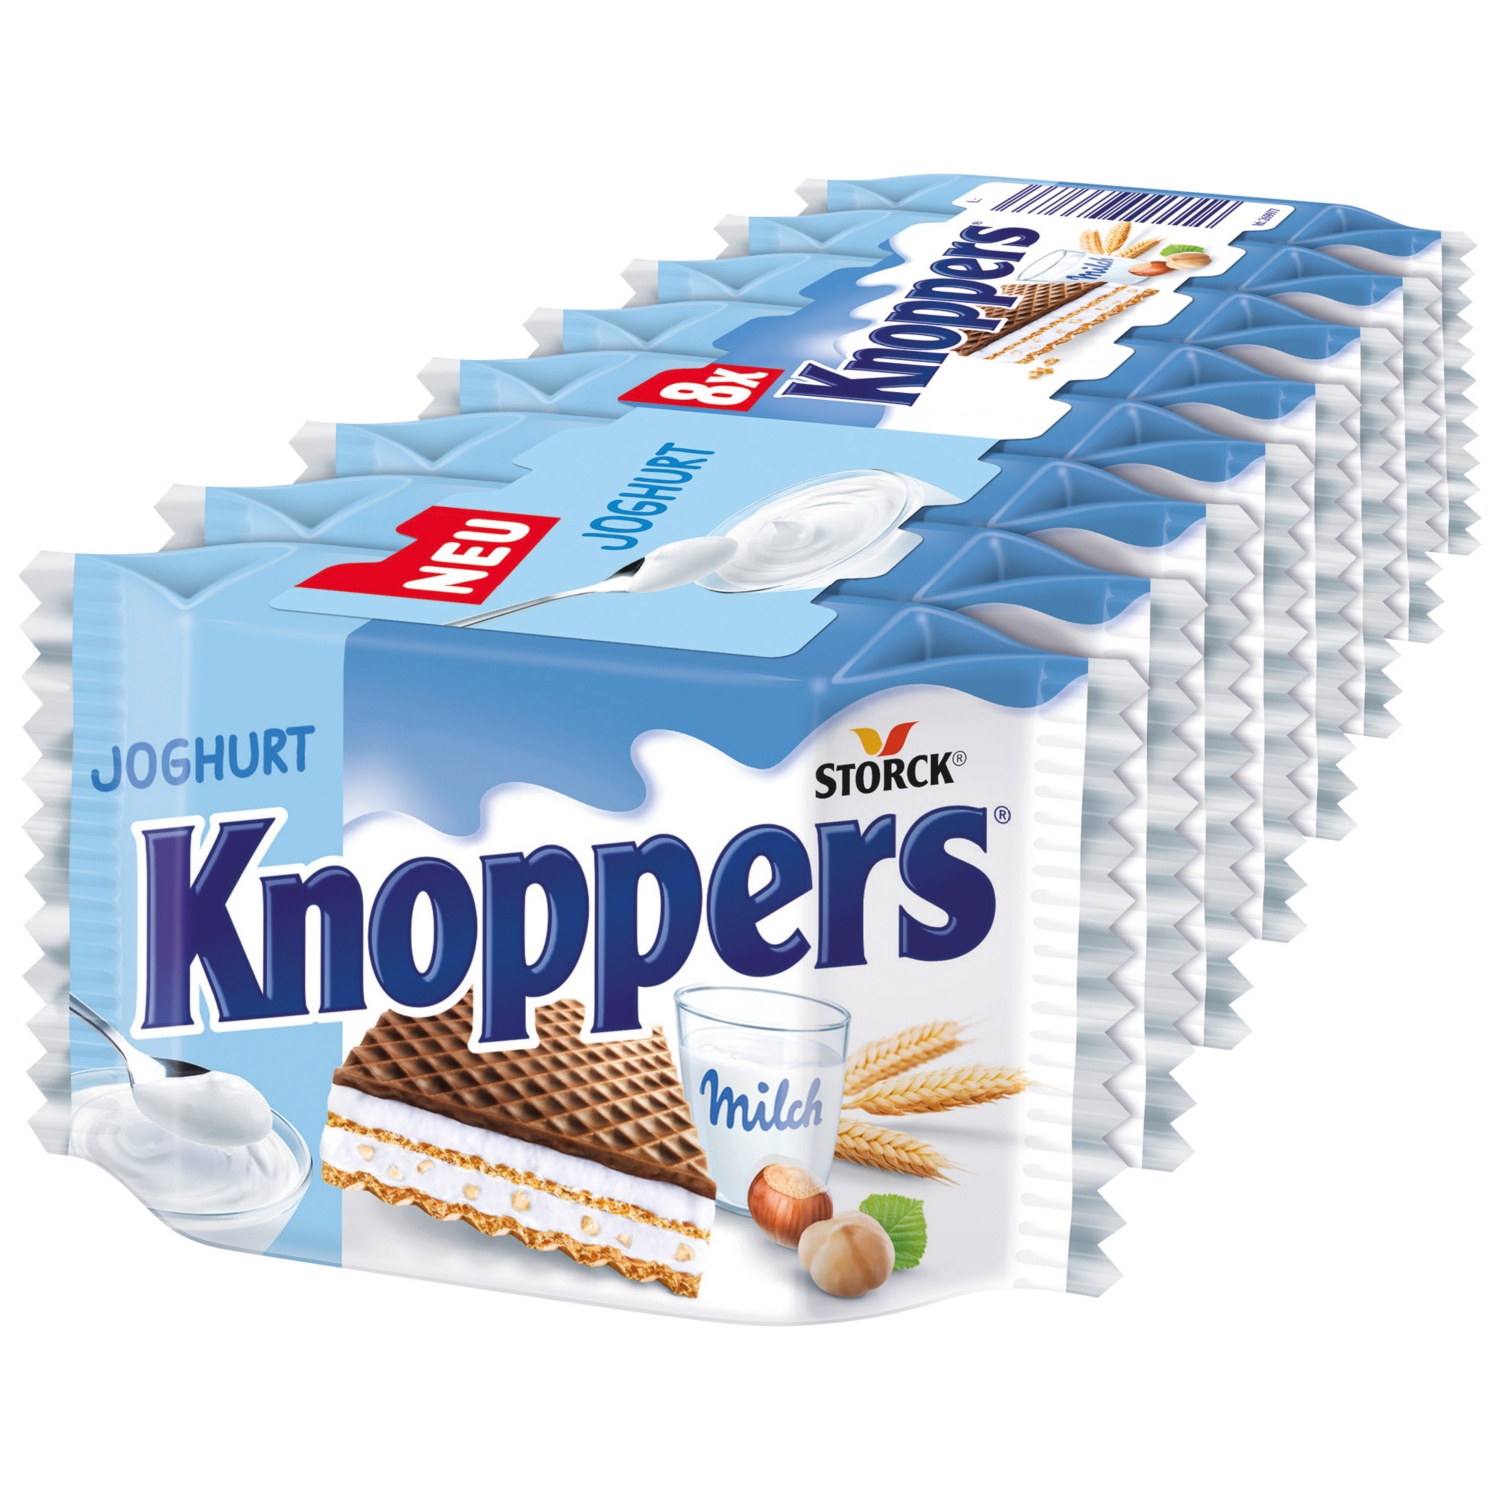 STORCK Knoppers Waffelschnitte, Joghurt